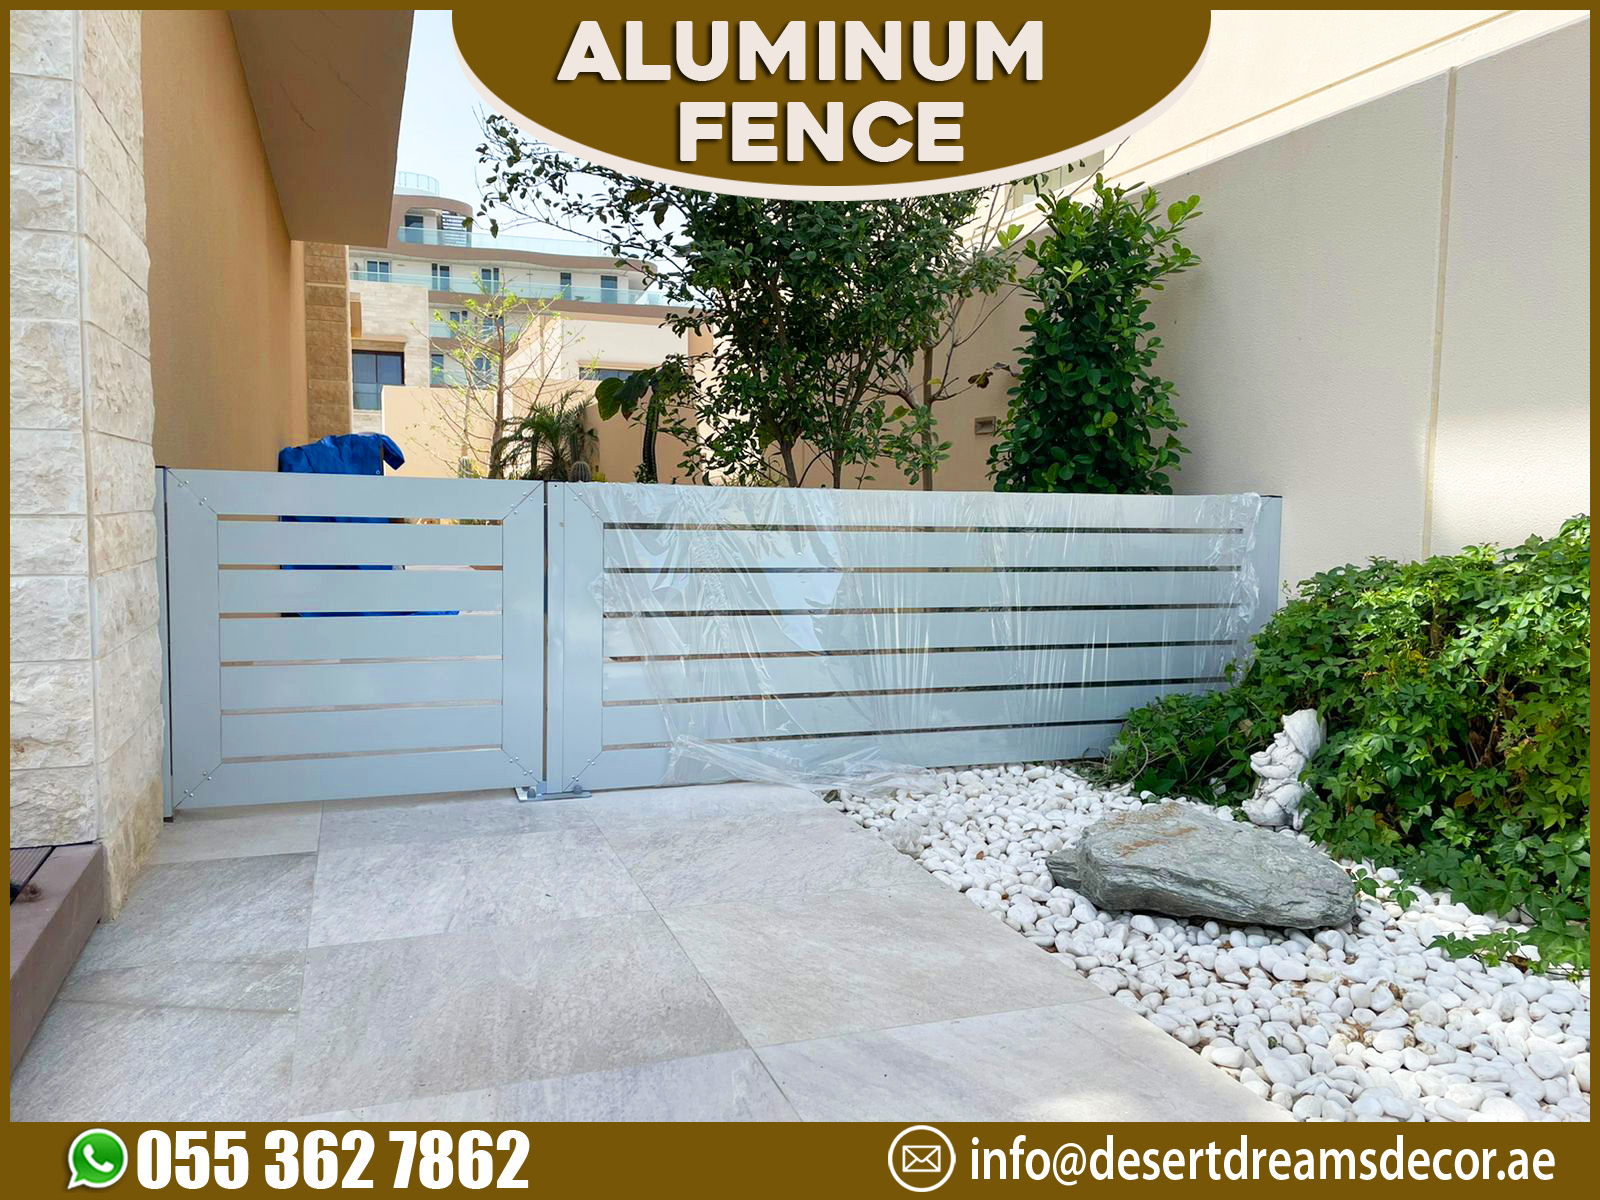 Aluminum Fence Supply in UAE.